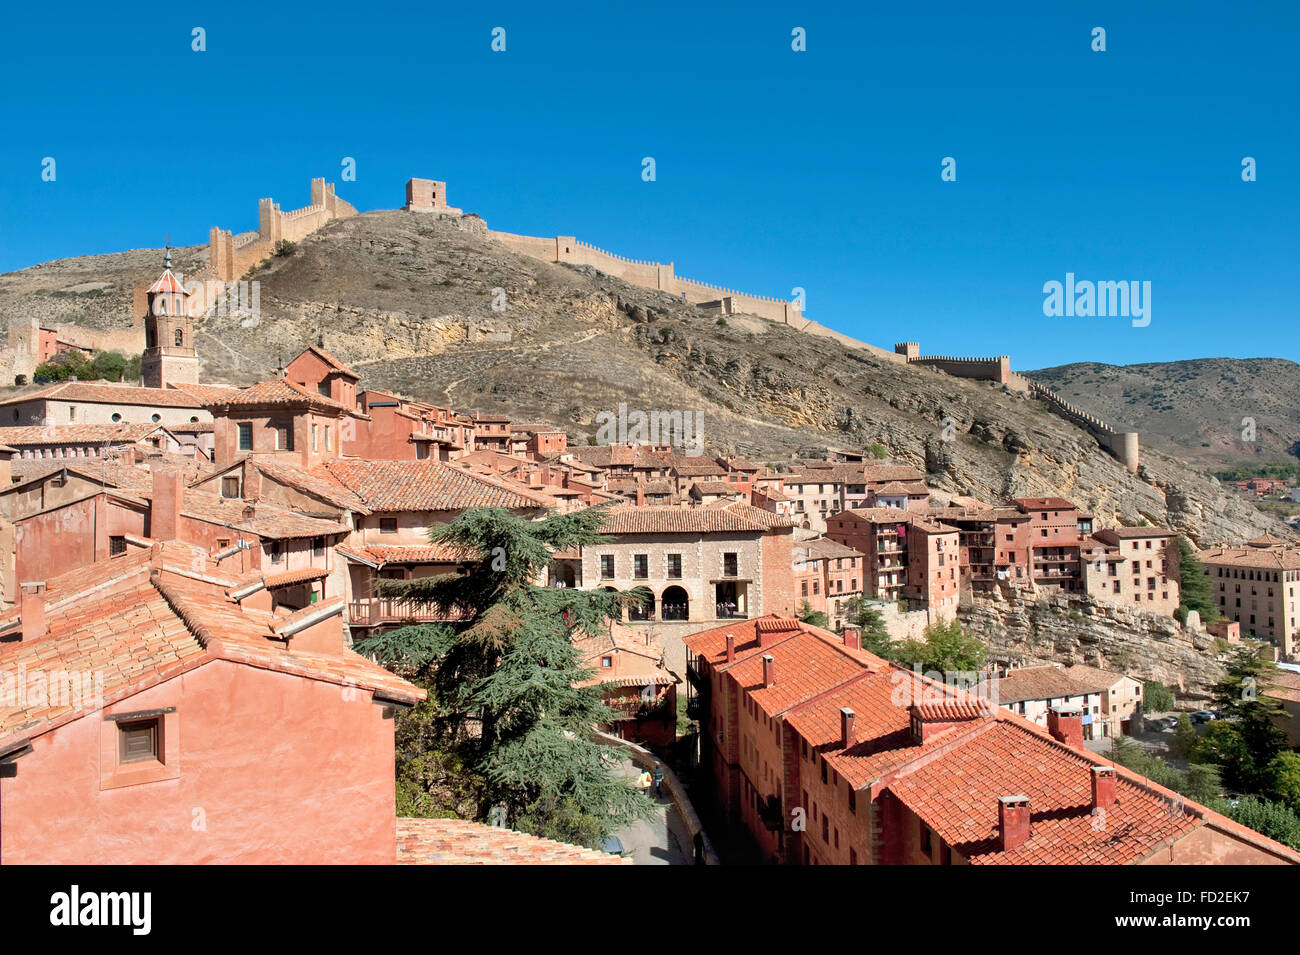 Vista del villaggio di Albarrcin in Teruel, Spagna.al di sopra della città si può vedere il muro di cinta del castello. Foto Stock